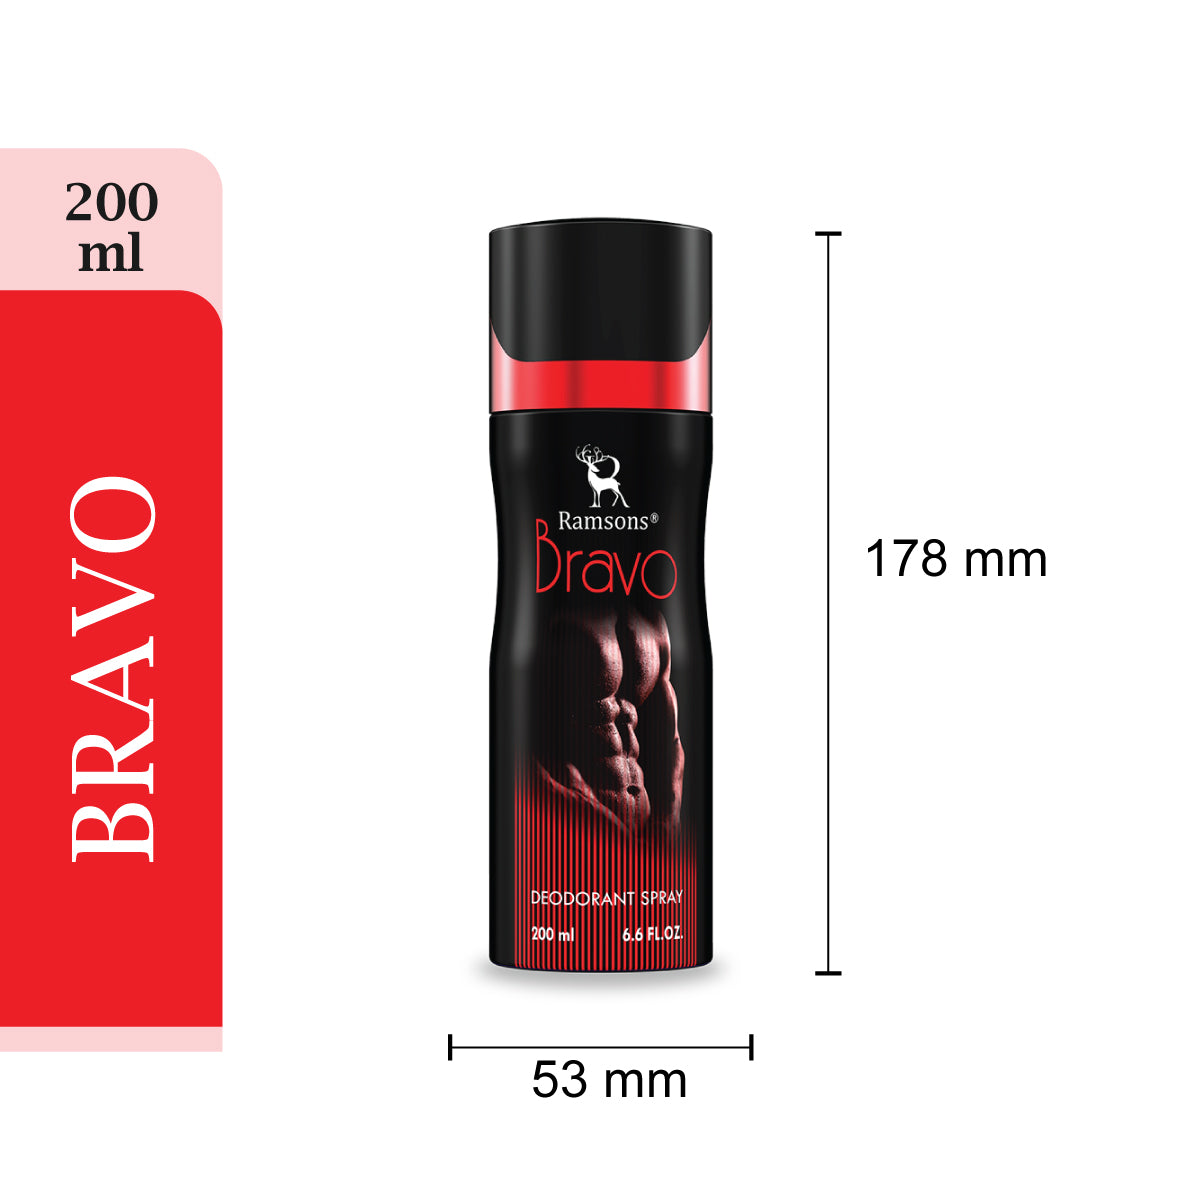 BRAVO Deodorant Spray